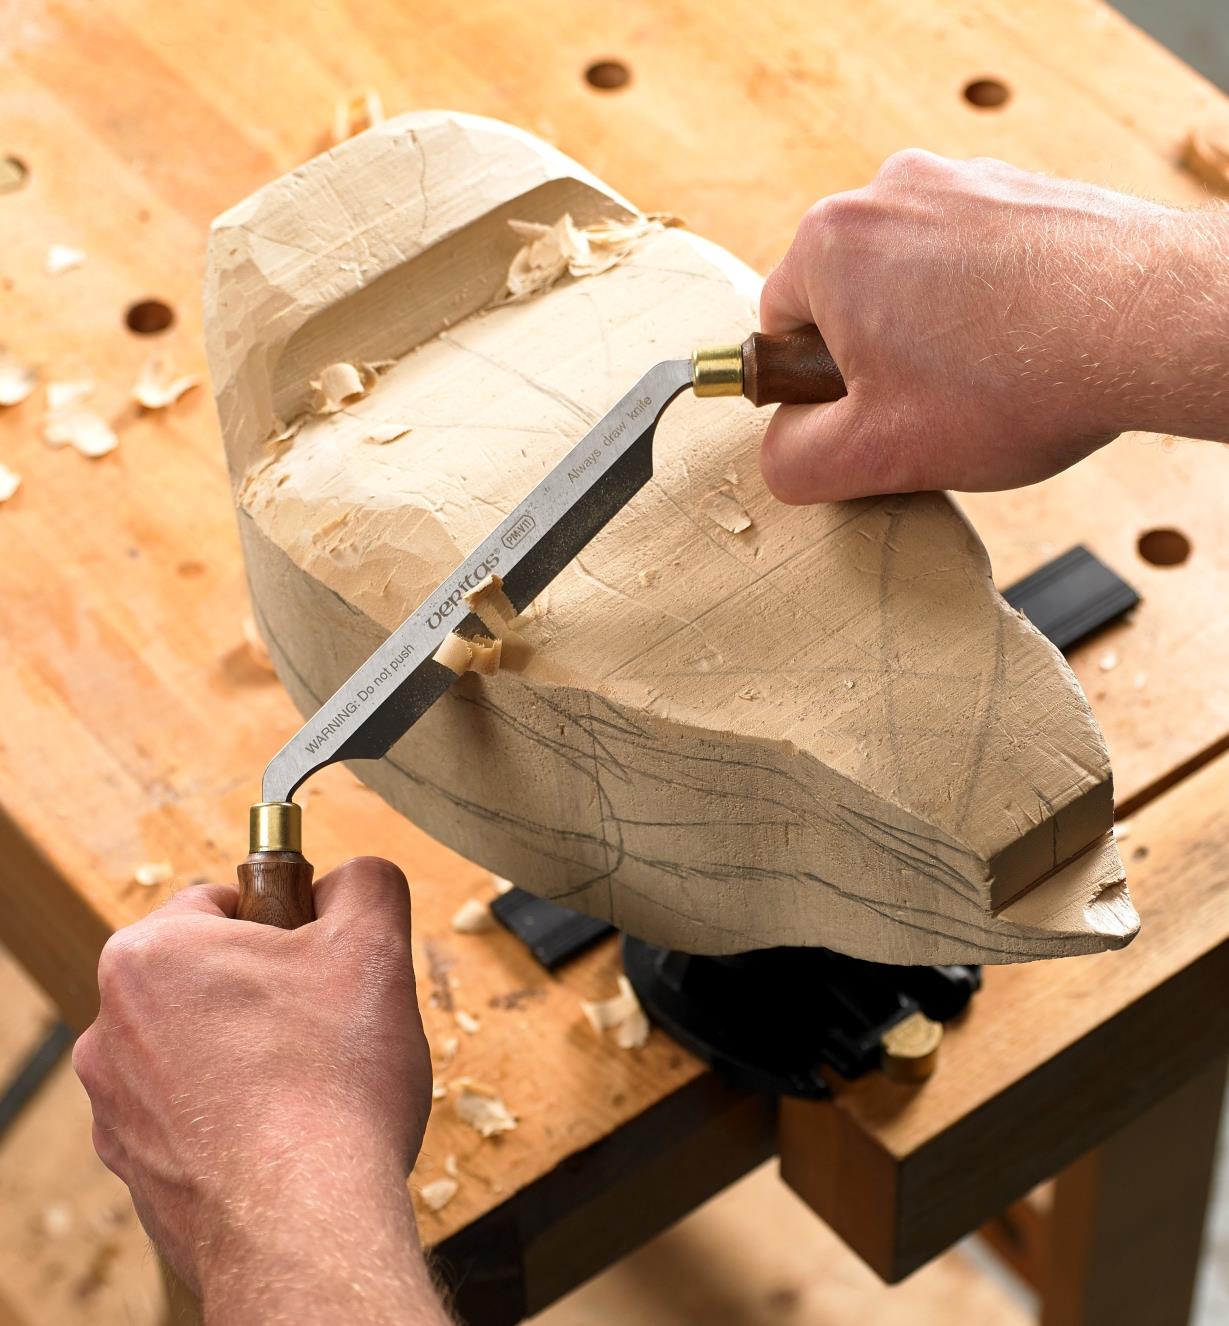 Plane de sculpteur PM-V11 Veritas servant à sculpter un appelant de canard en bois